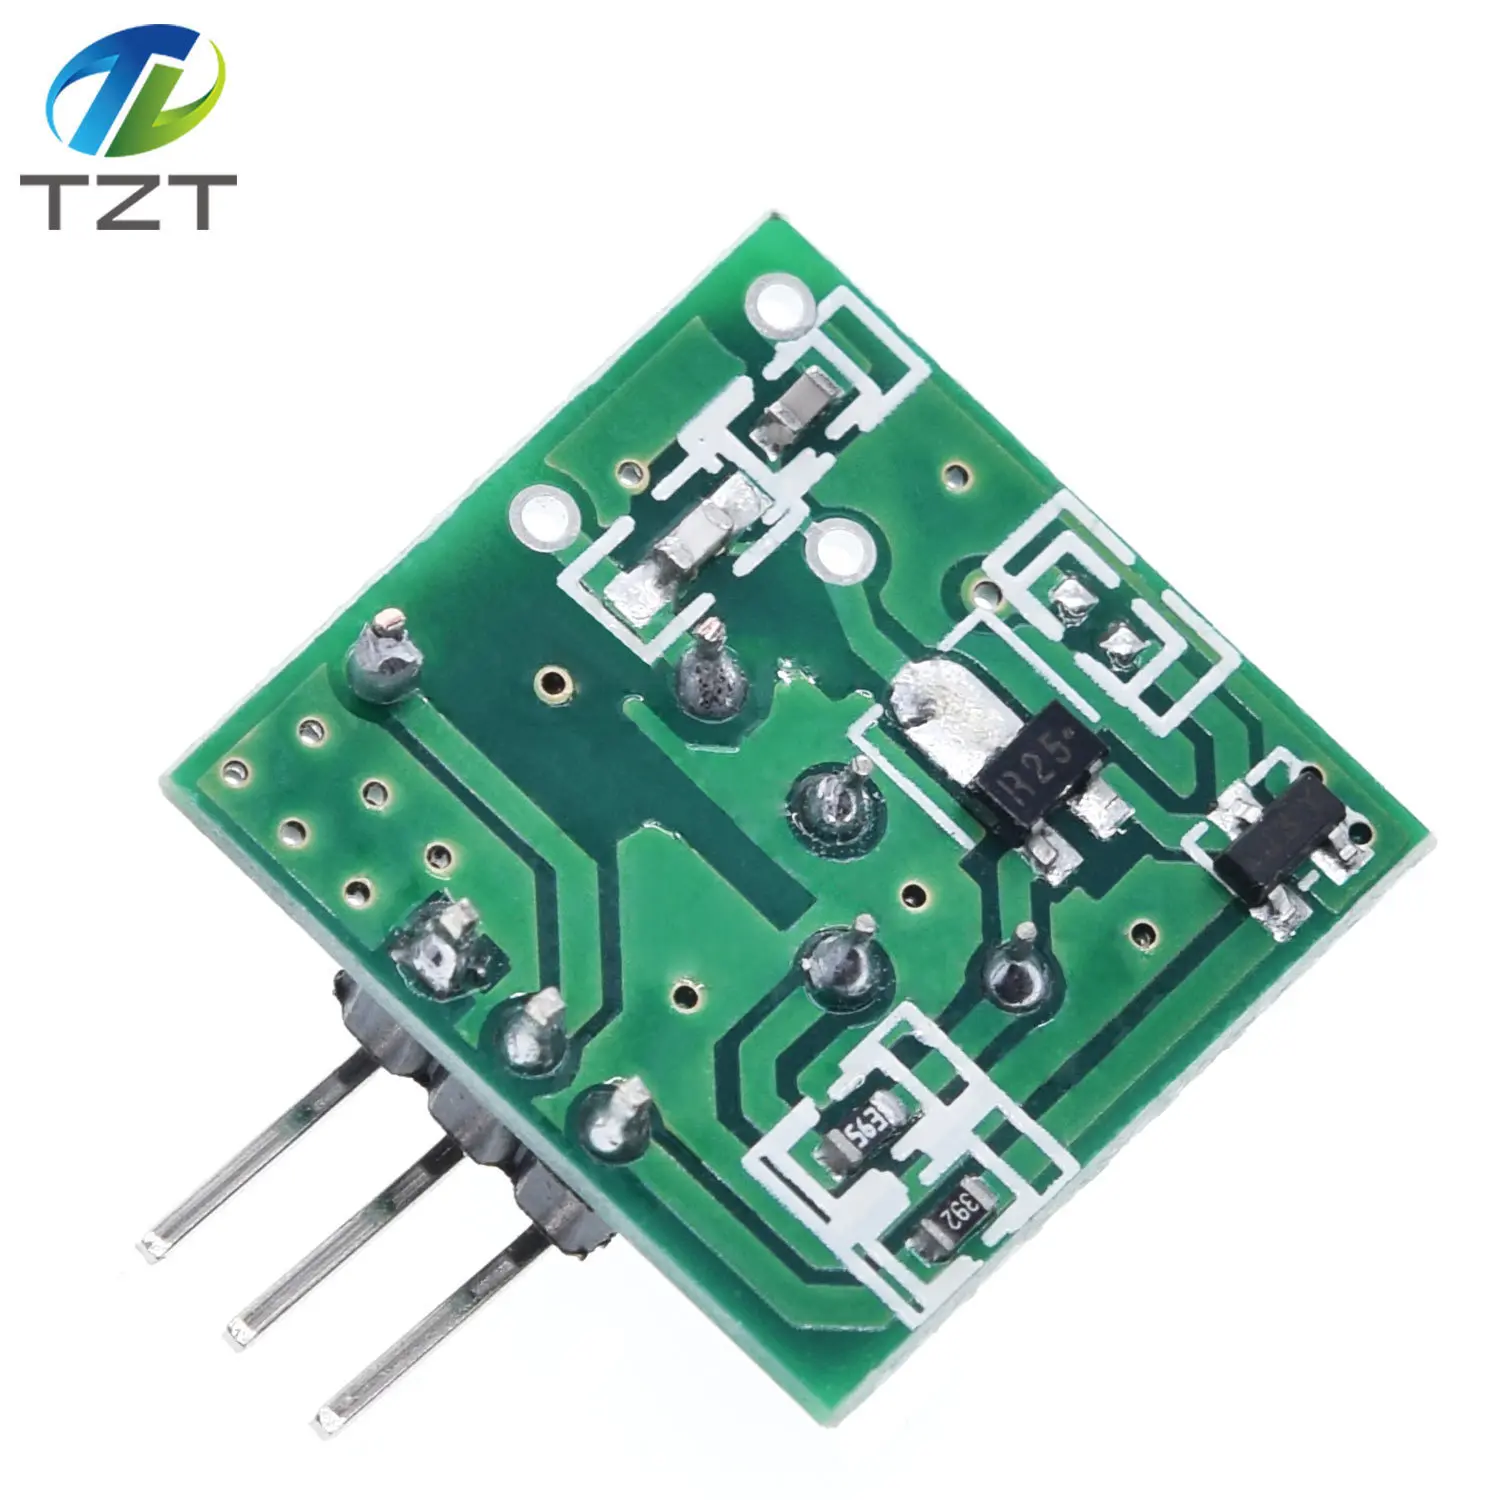 433 МГц РЧ беспроводной передатчик Модуль и приемник комплект 5 В DC 433 МГц беспроводной для Arduino Raspberry Pi/ARM/MCU WL Diy Kit